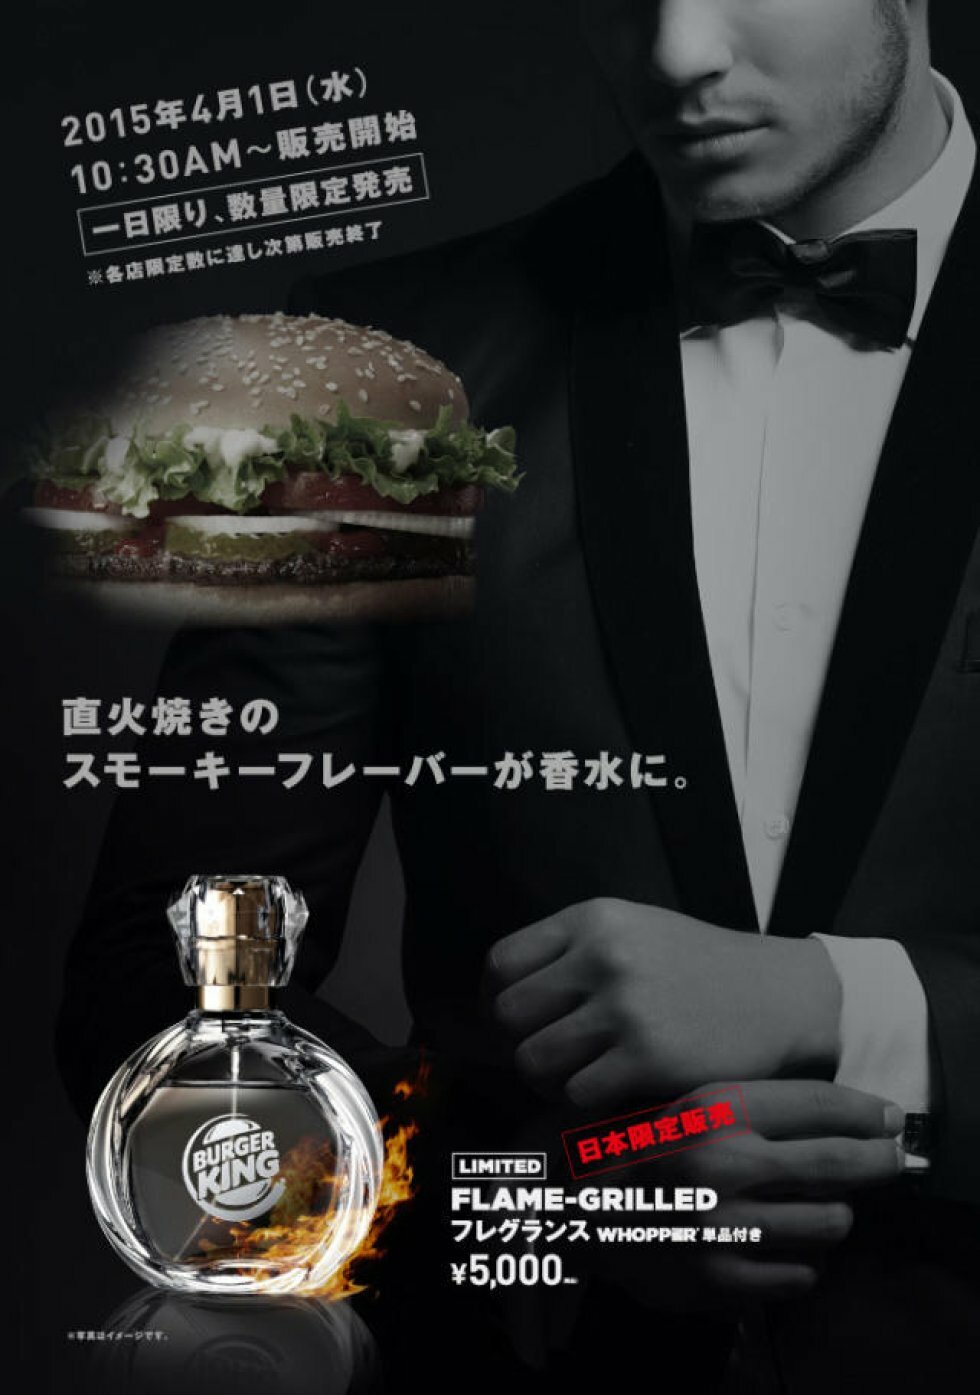 Burger King-parfume på markedet i Japan?